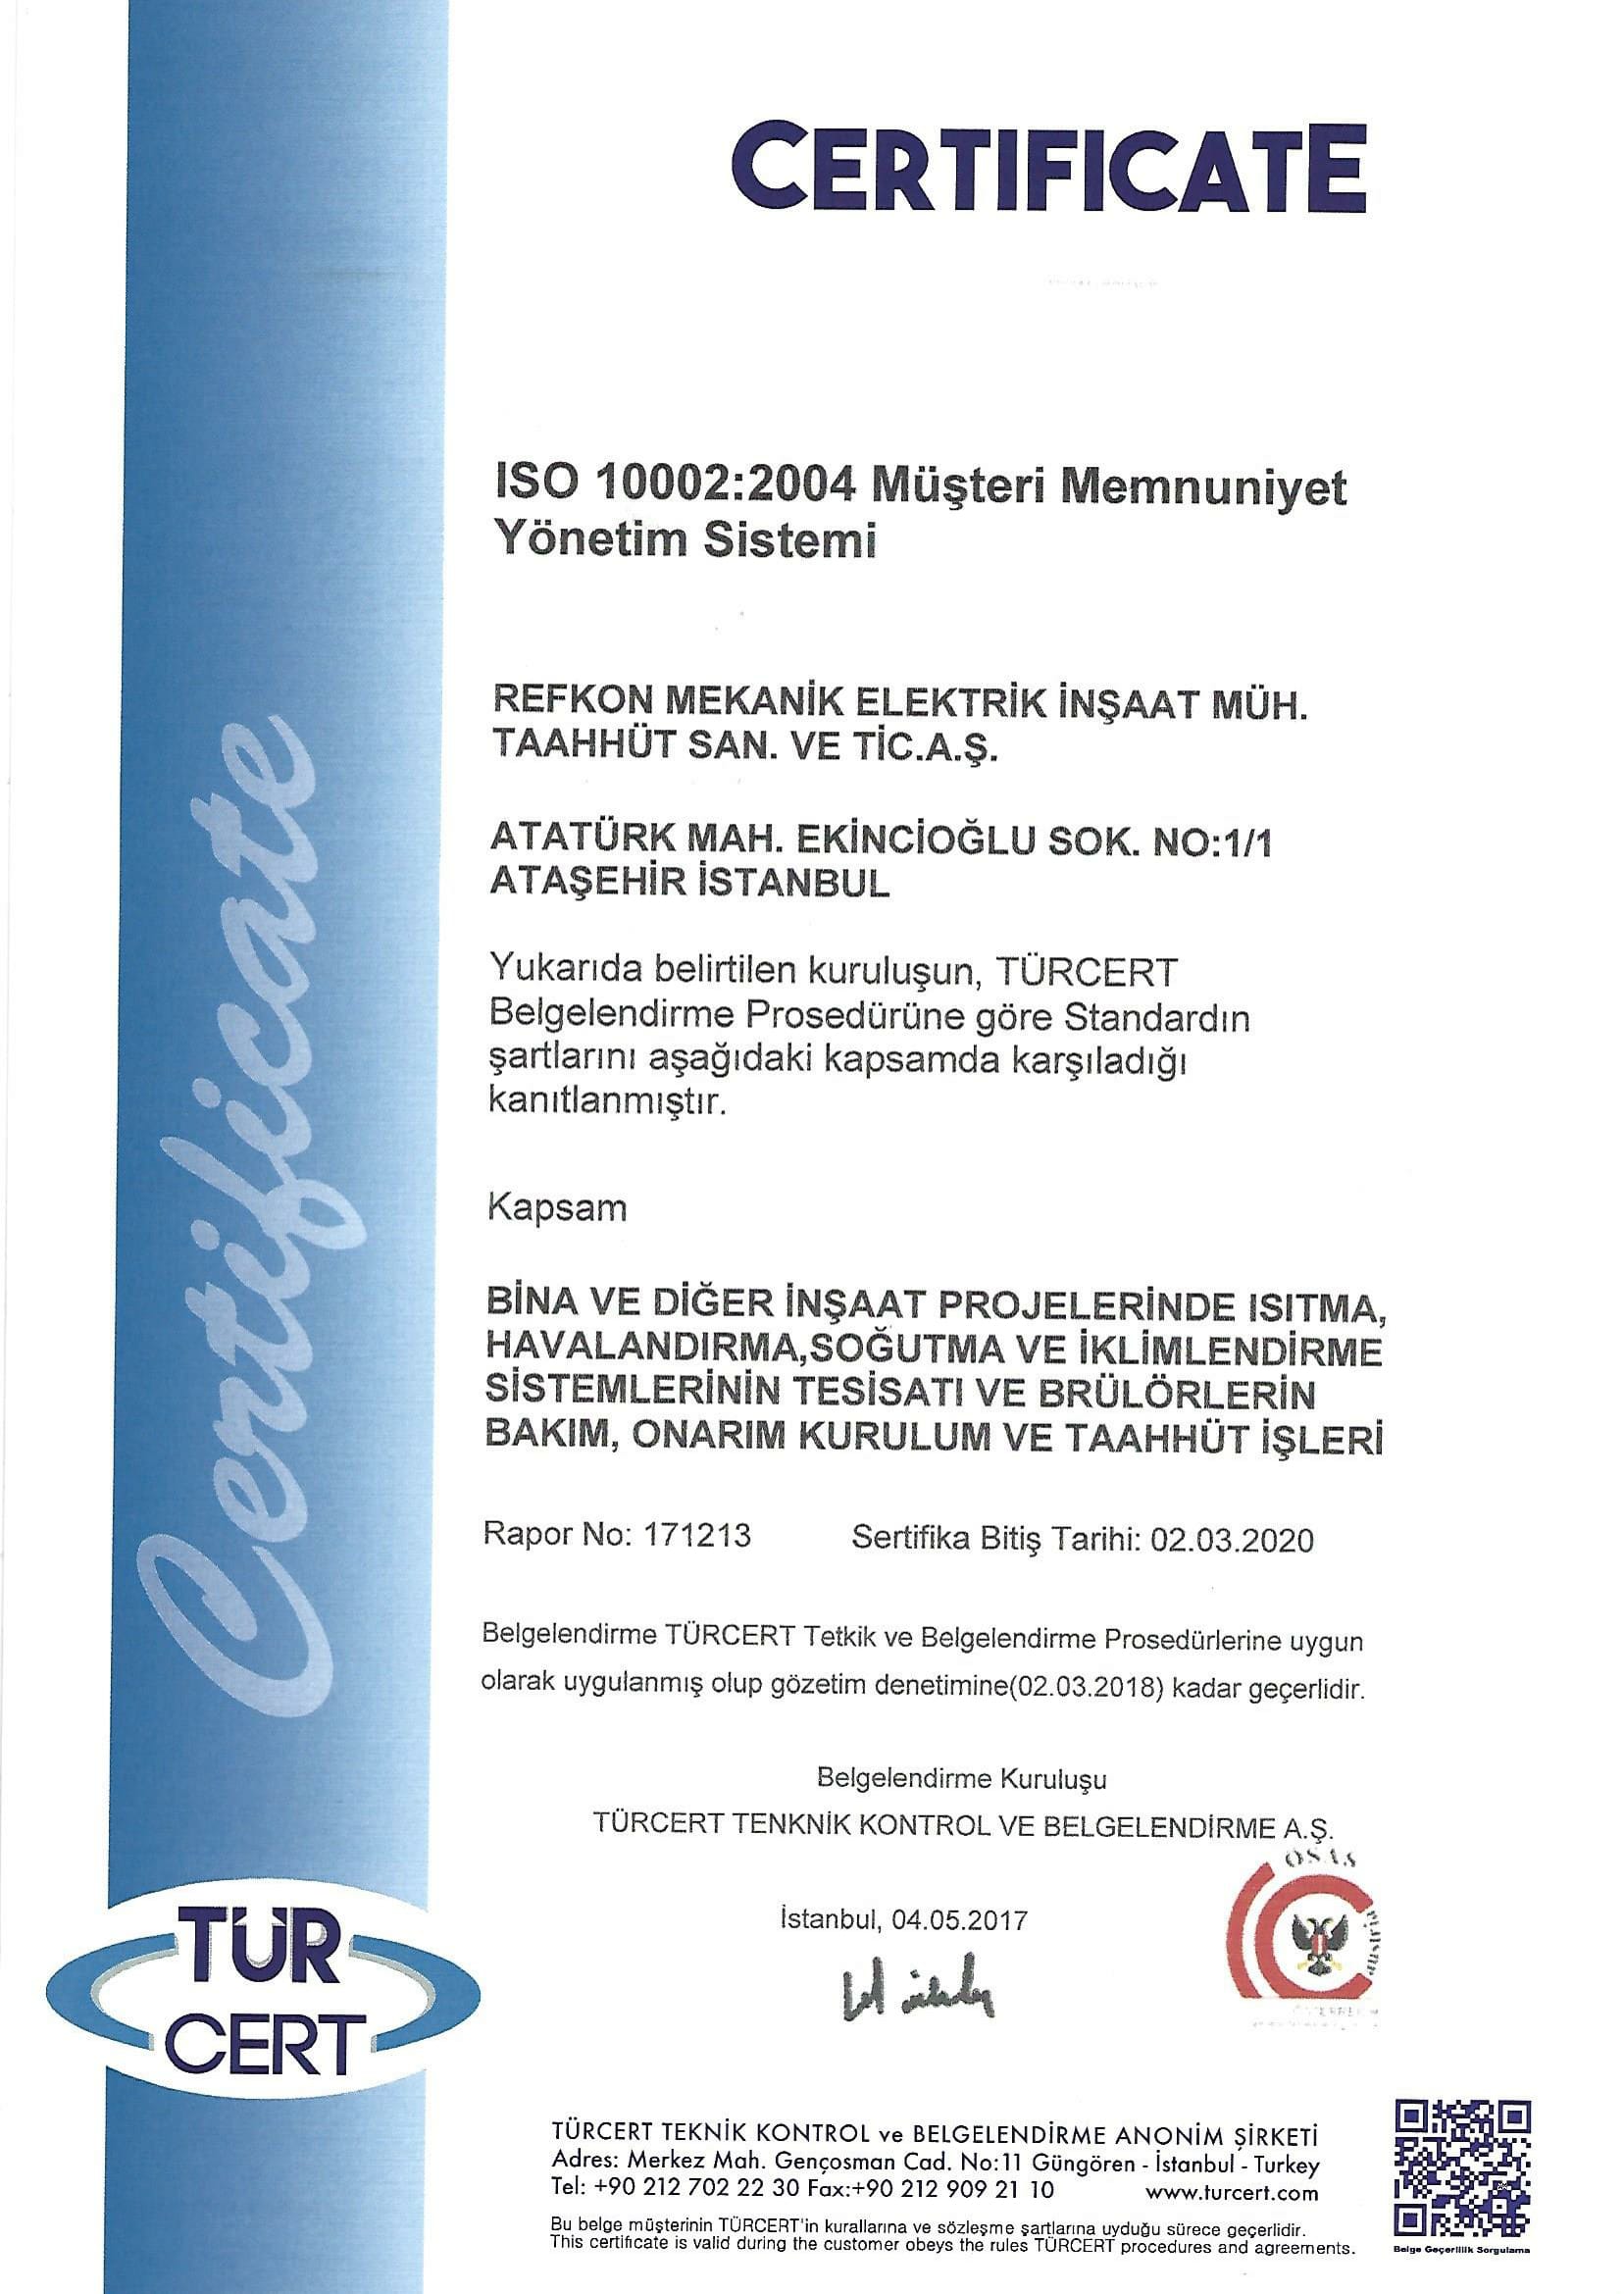 ıso 10002:2004 Müşteri Memnuniyet Yönetim Sistemi